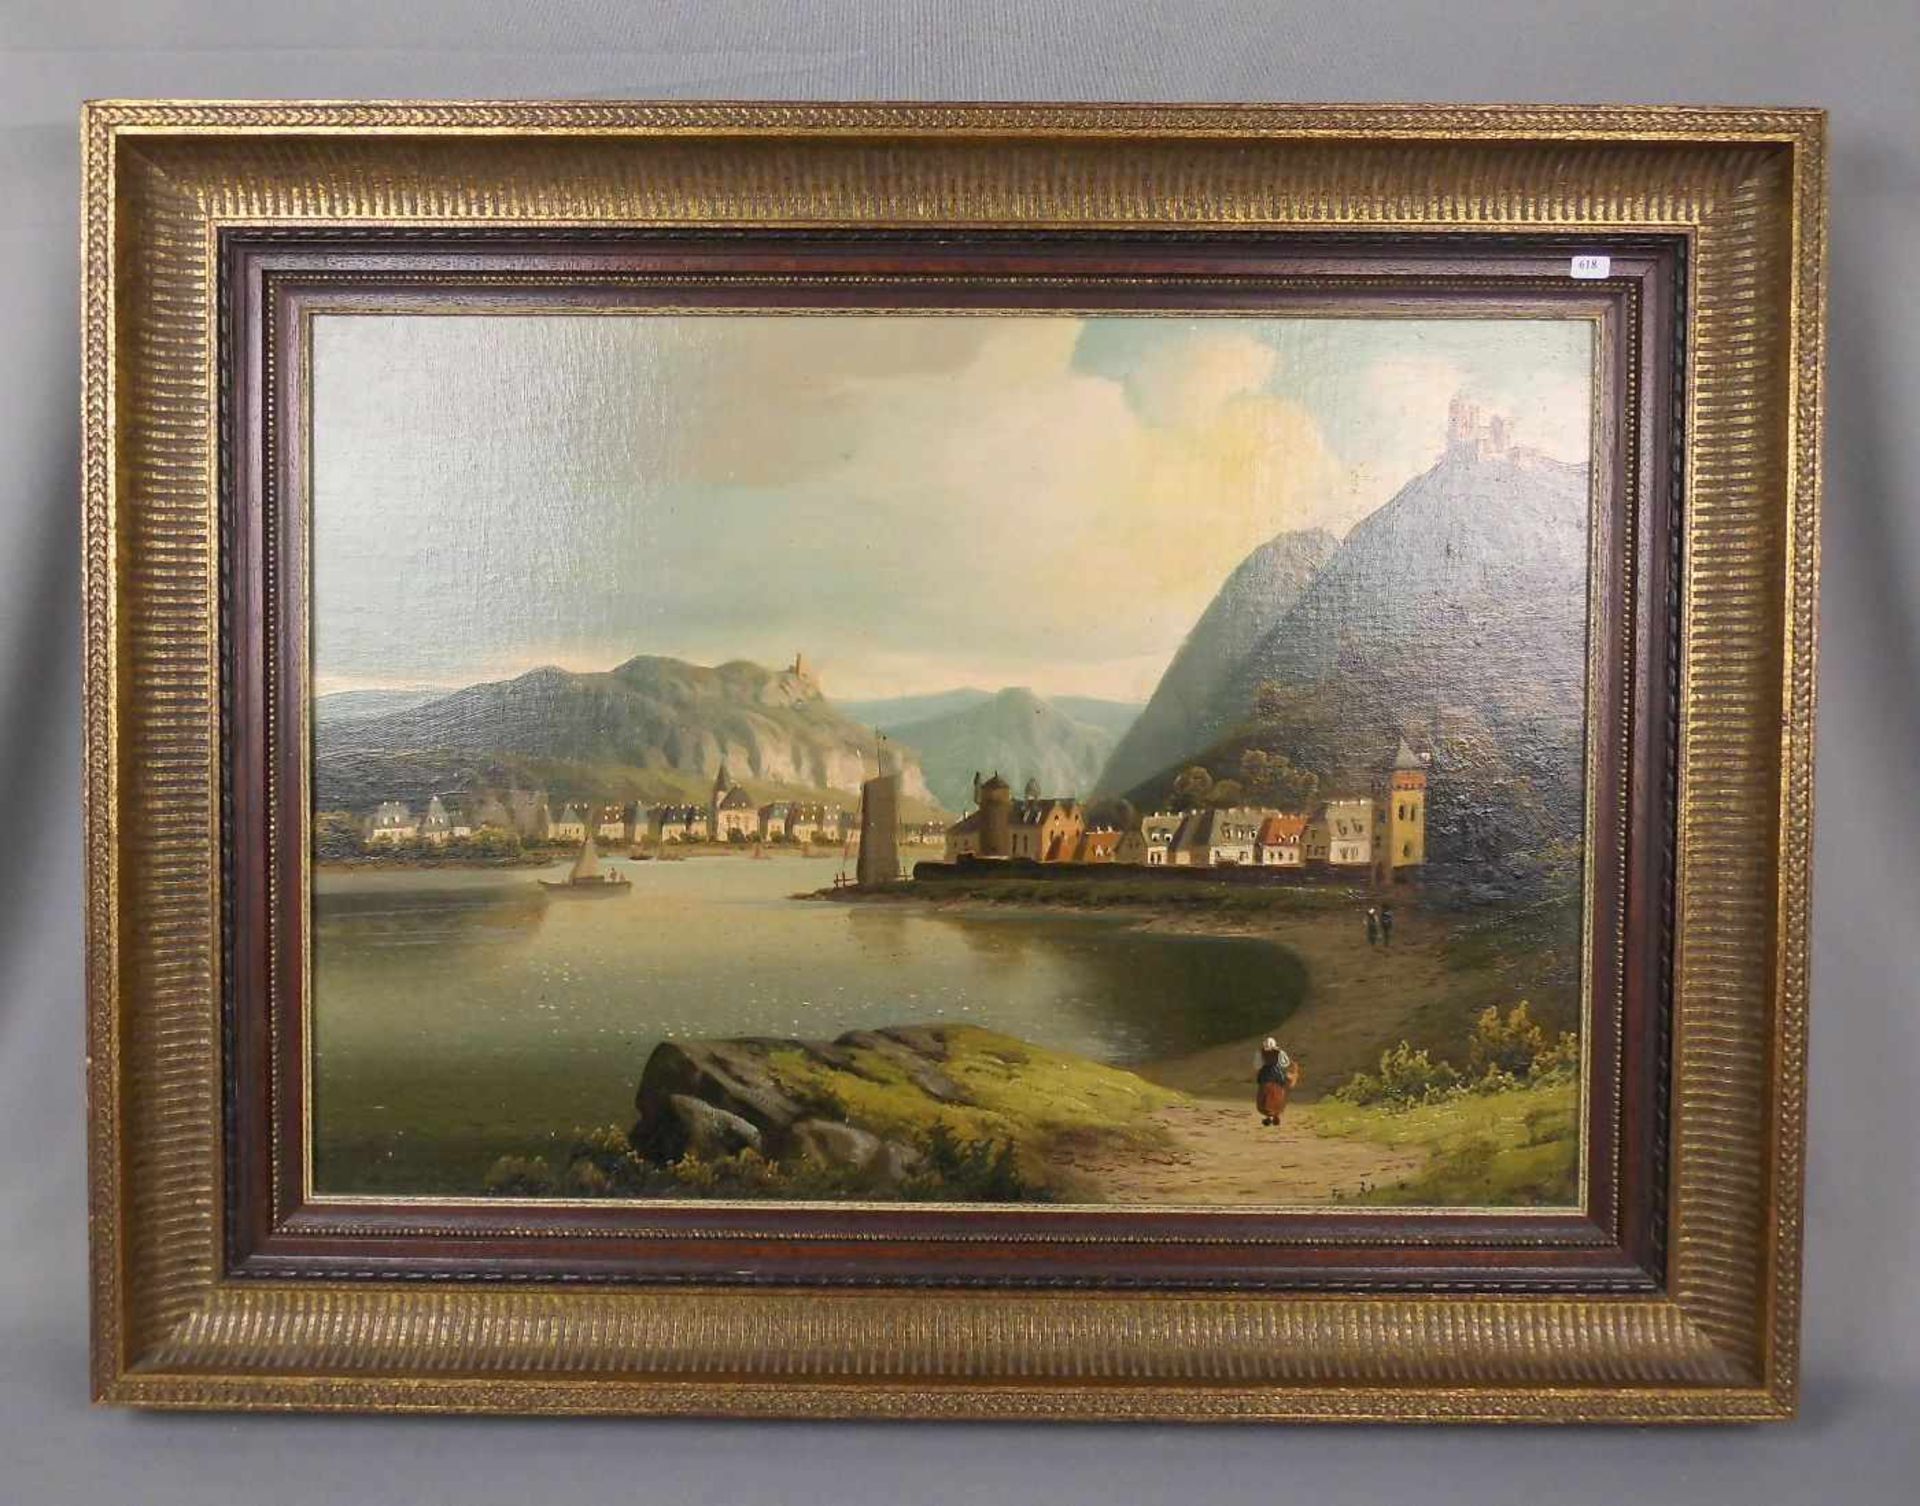 ANONYMUS (deutscher Maler des 19./20. Jh.), Gemälde / painting: "Rheinvedute mit Stadtansichten